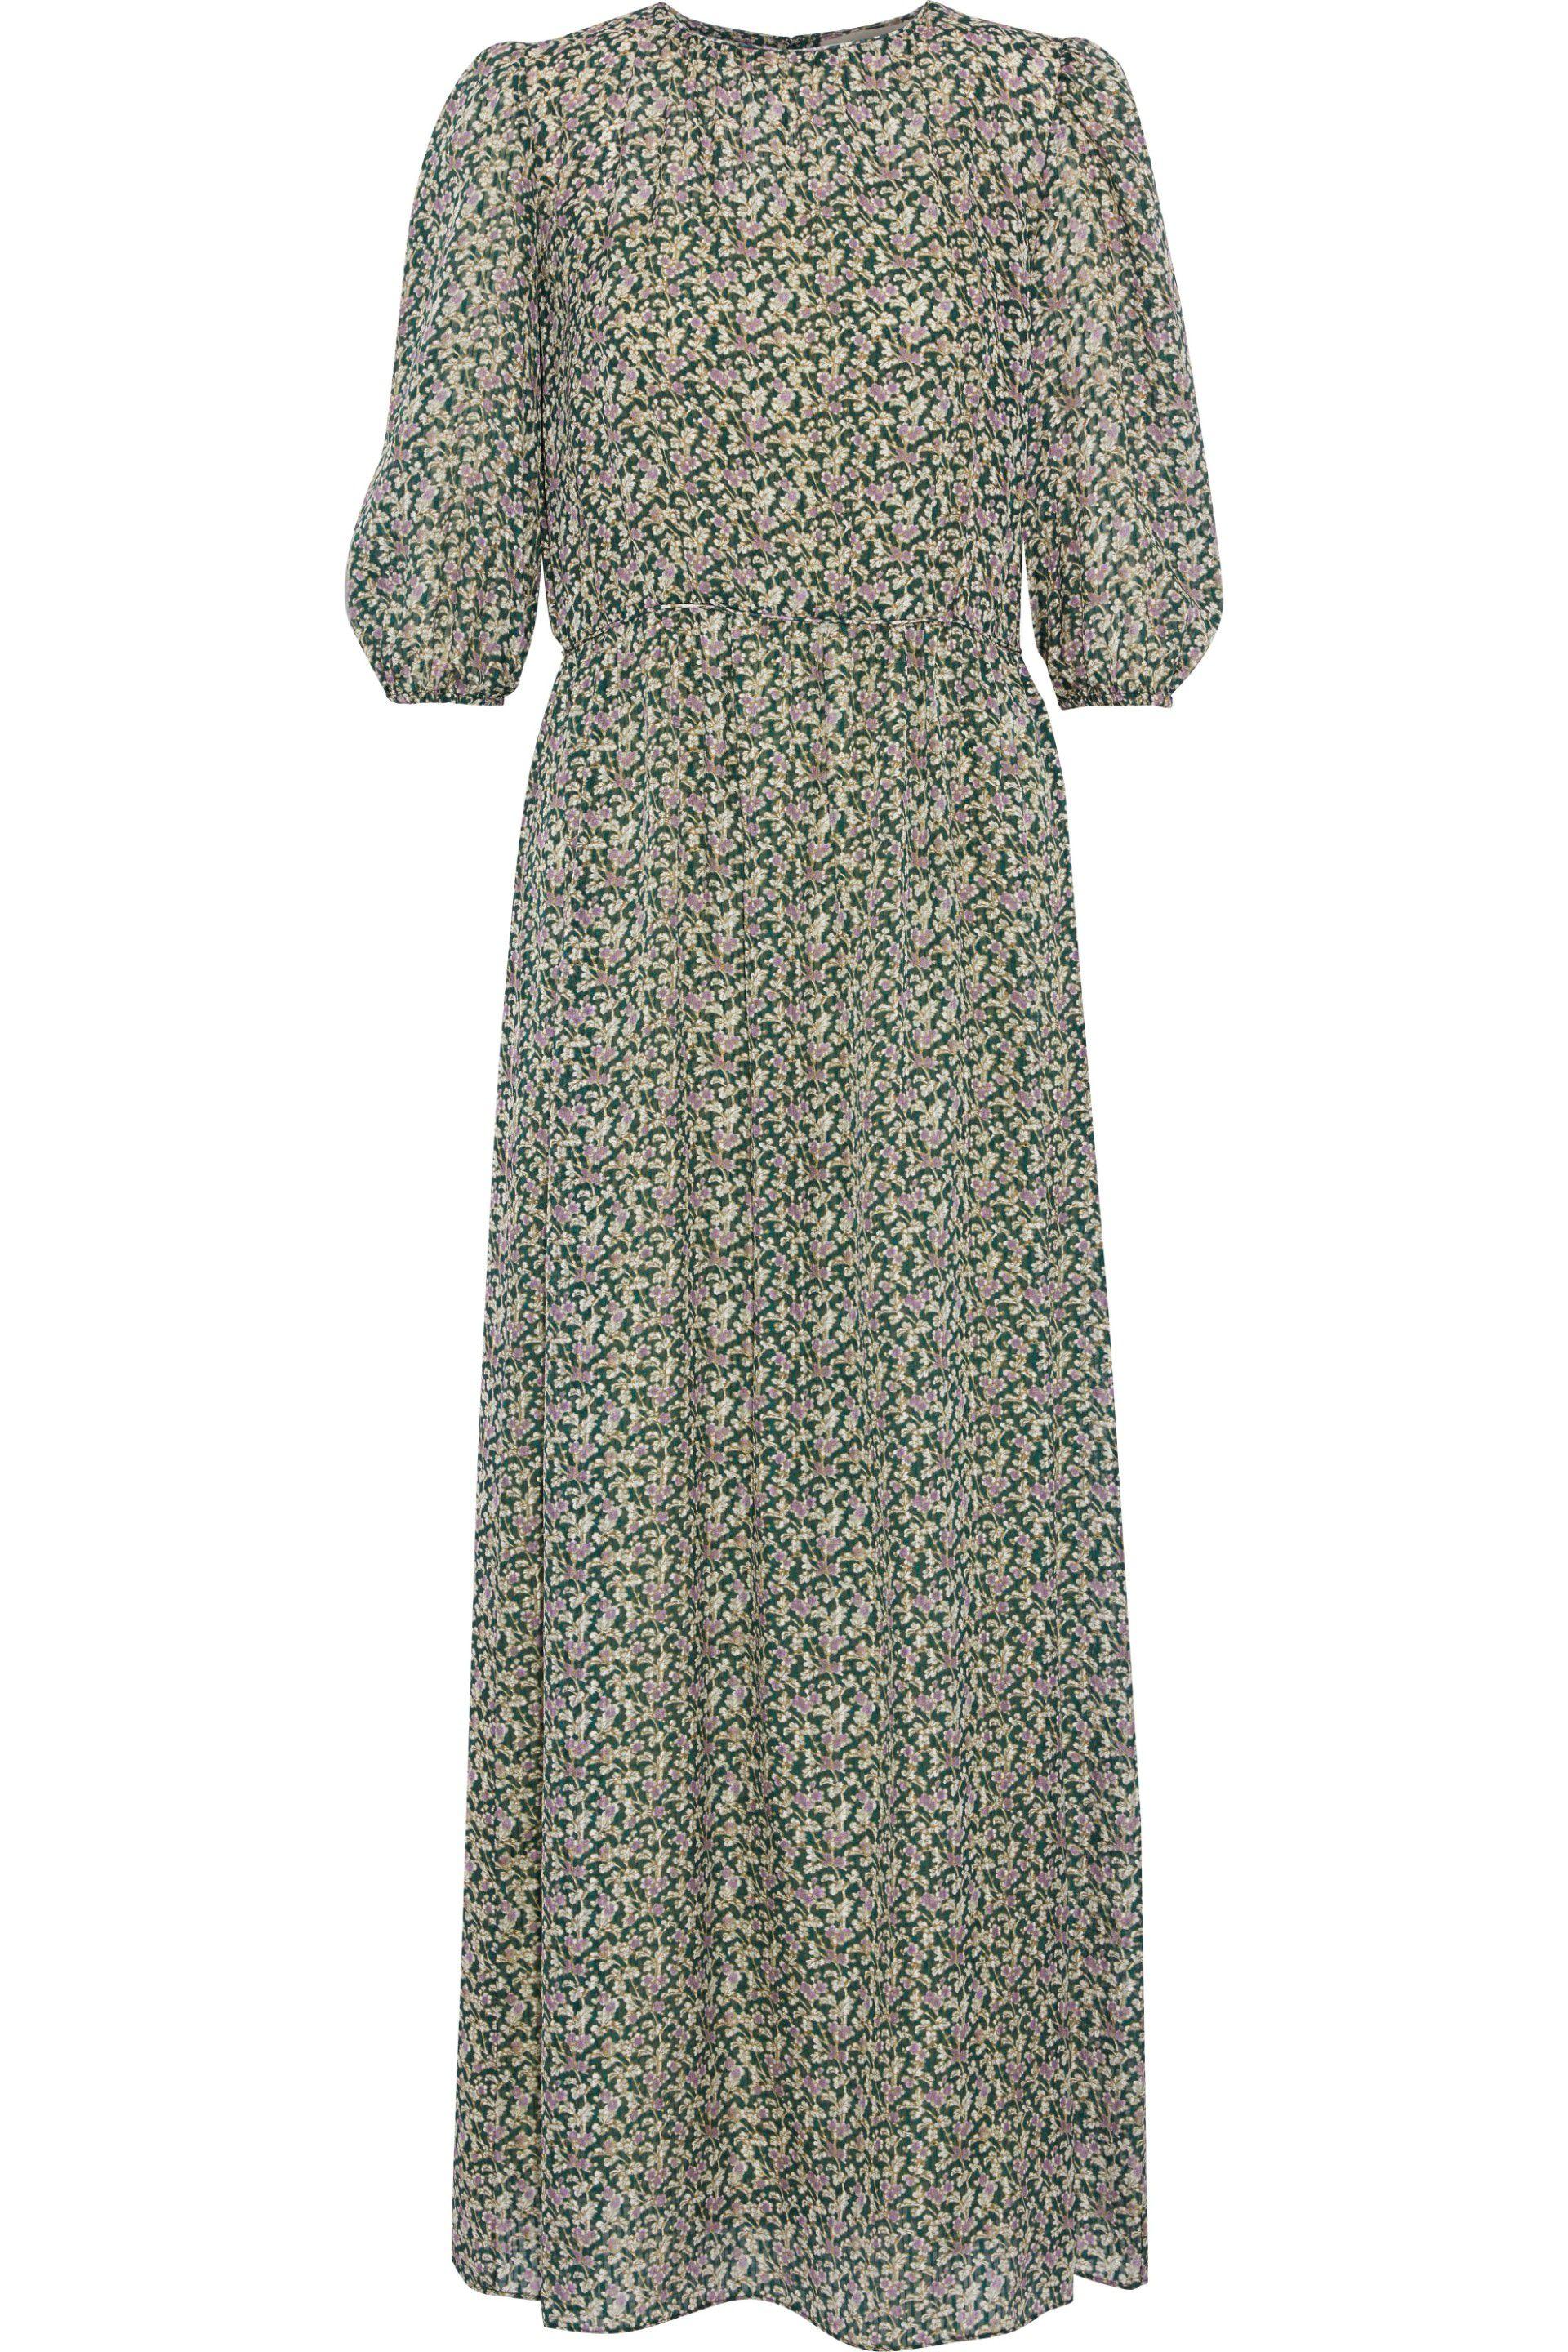 Vanessa Bruno Silk Gathered Printed Seersucker Maxi Dress Green - Lyst